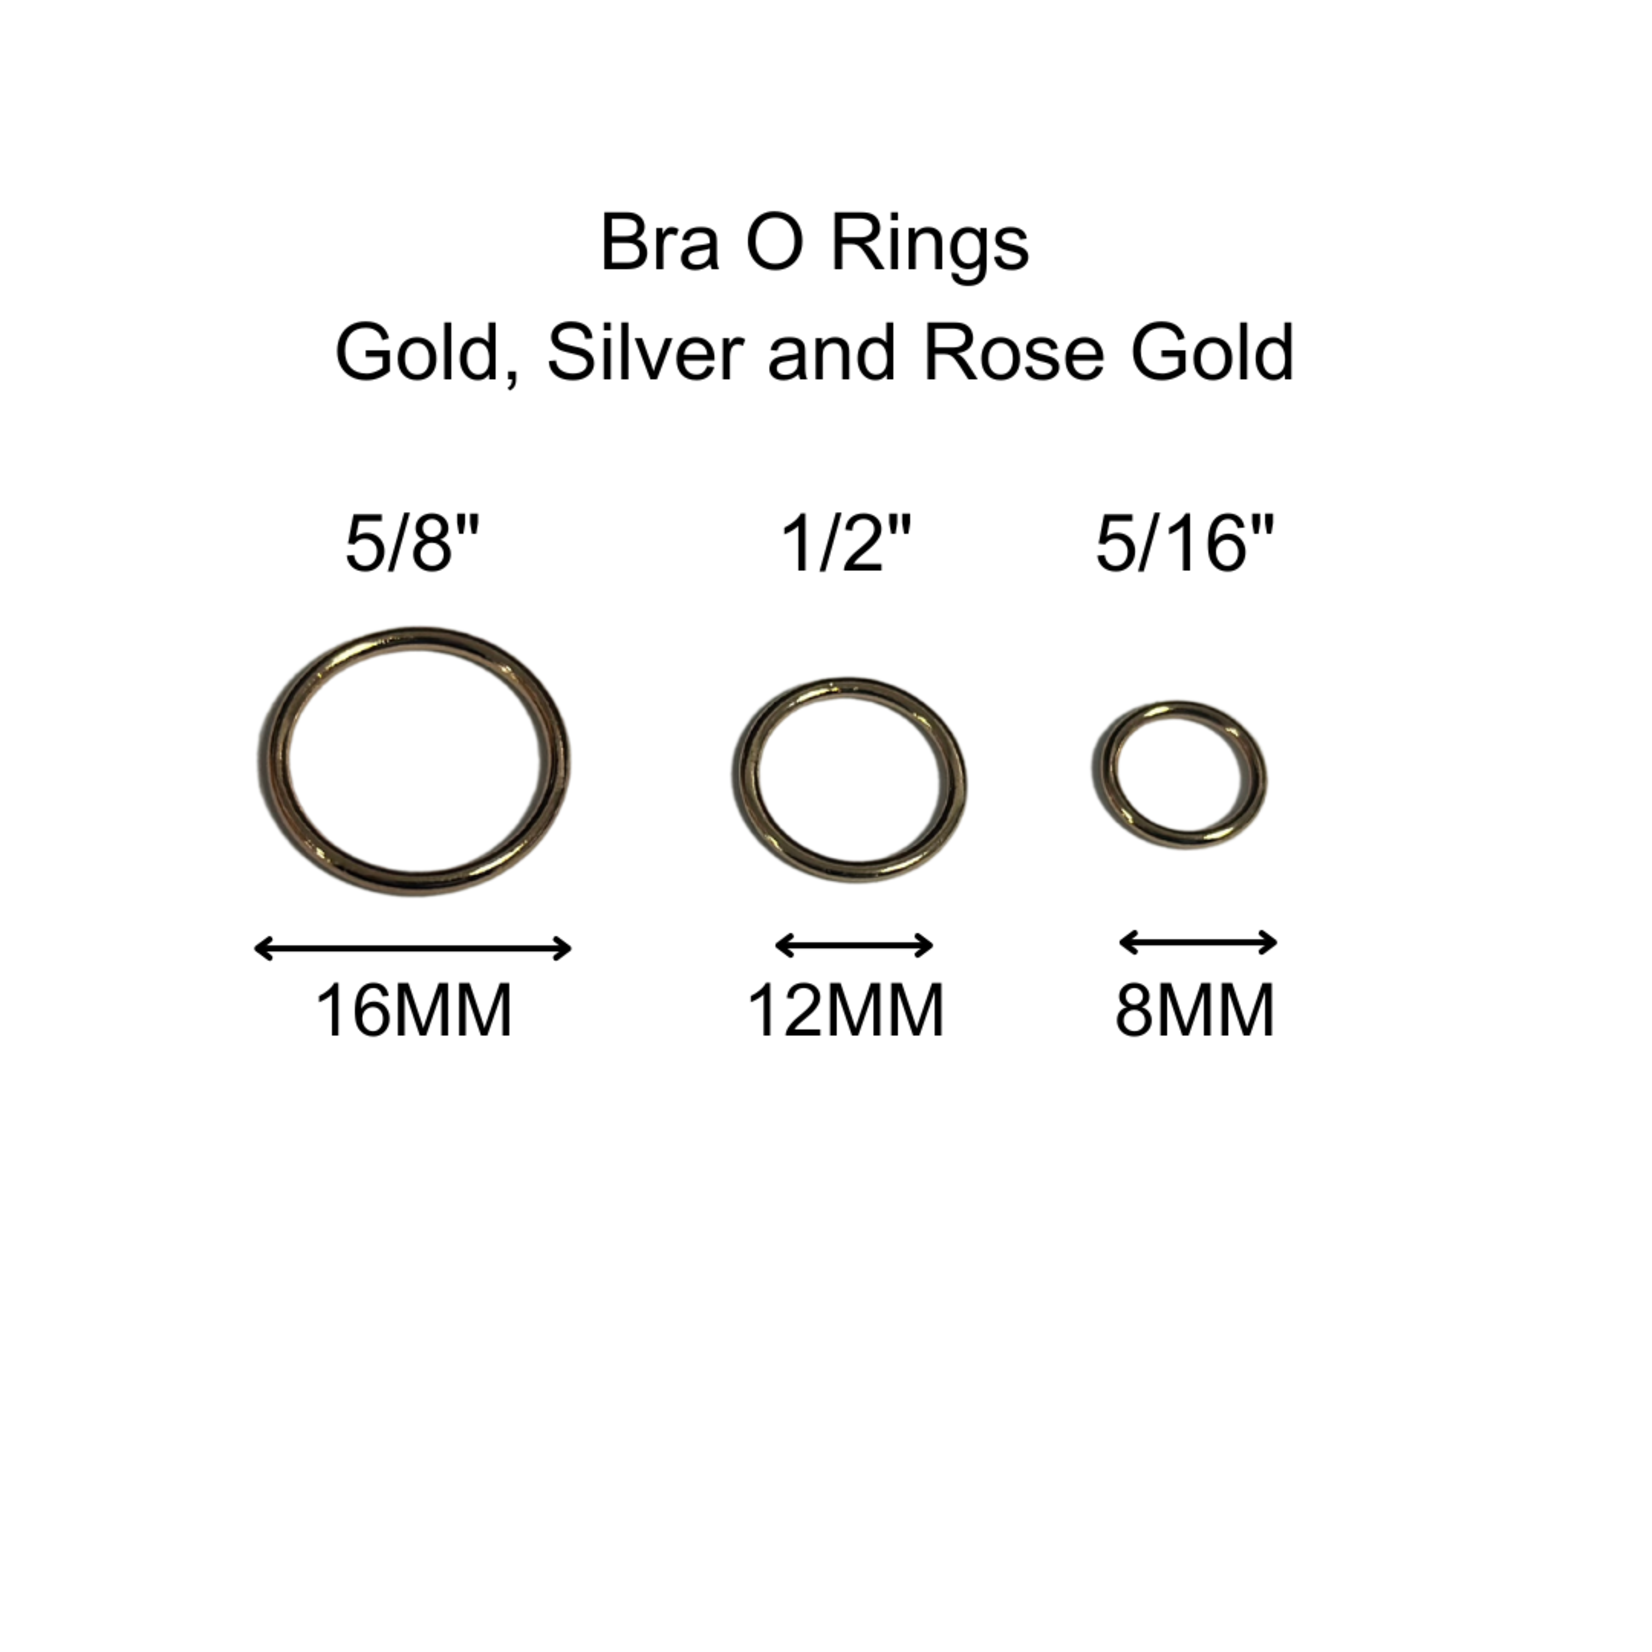 BRA O-RINGS (8MM) 5/16 INCH (100PCS/PACK) - ROSE GOLD